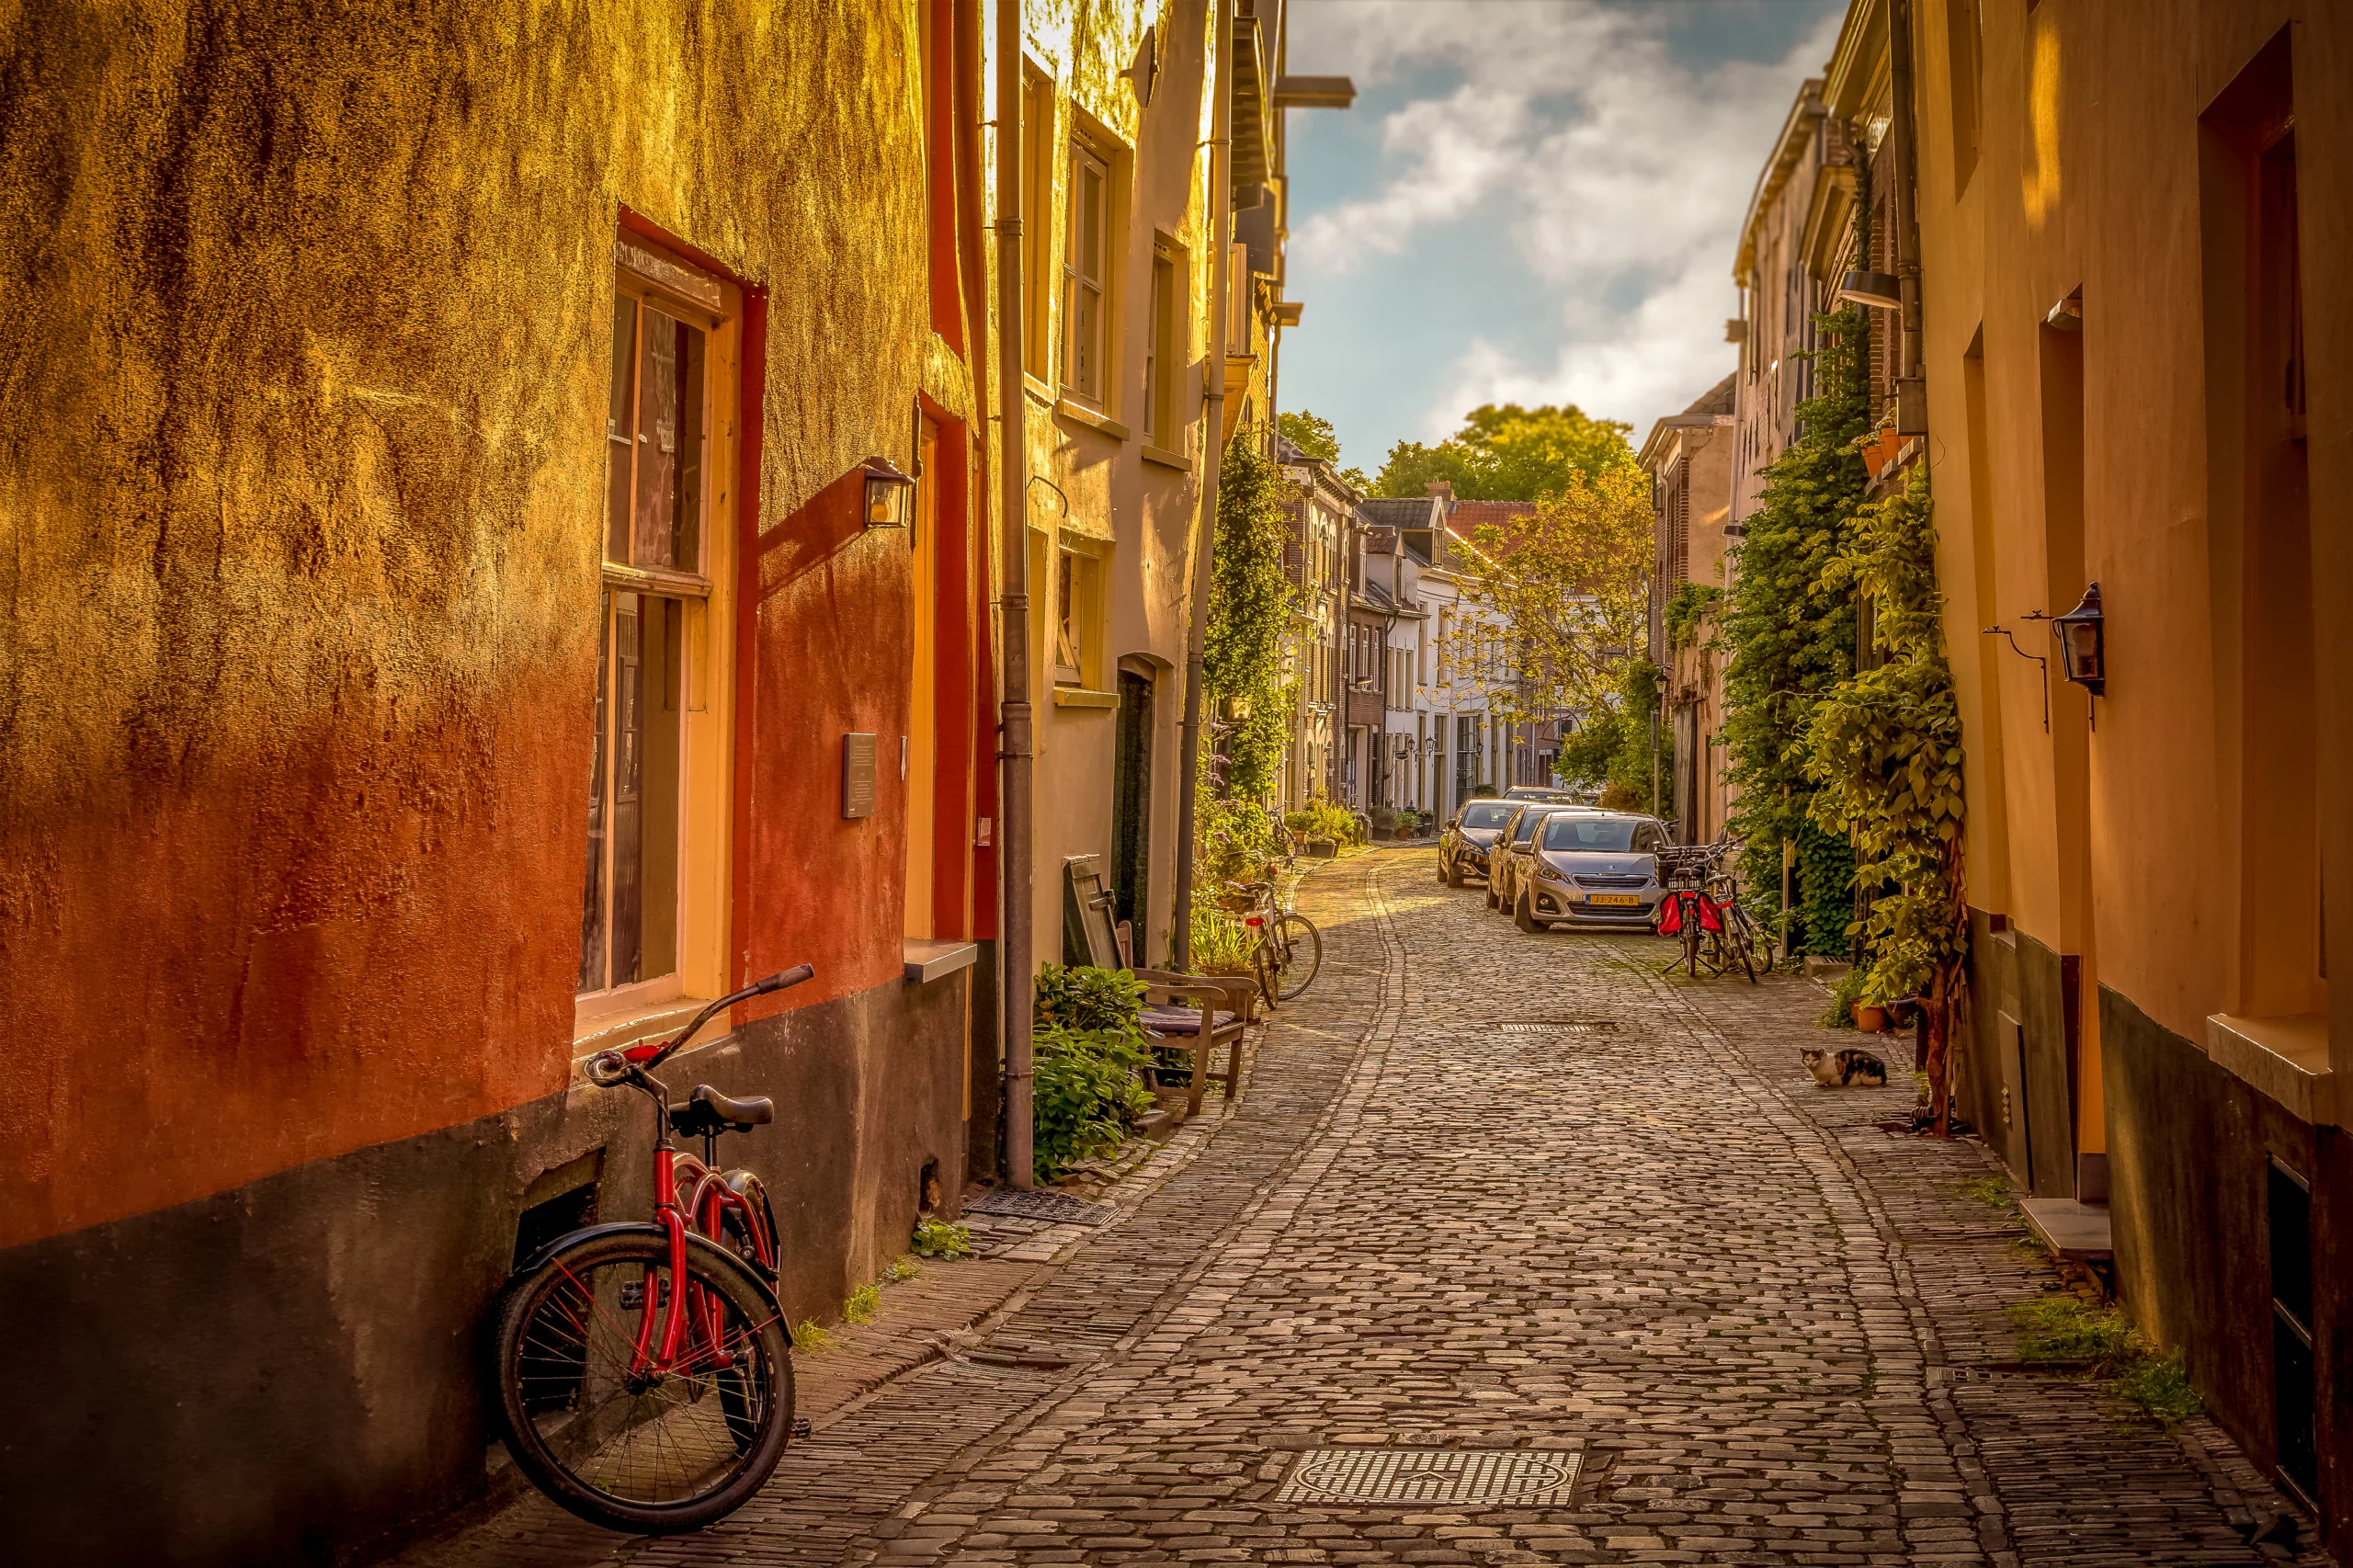 De mooiste straat van Zutphen in de zon